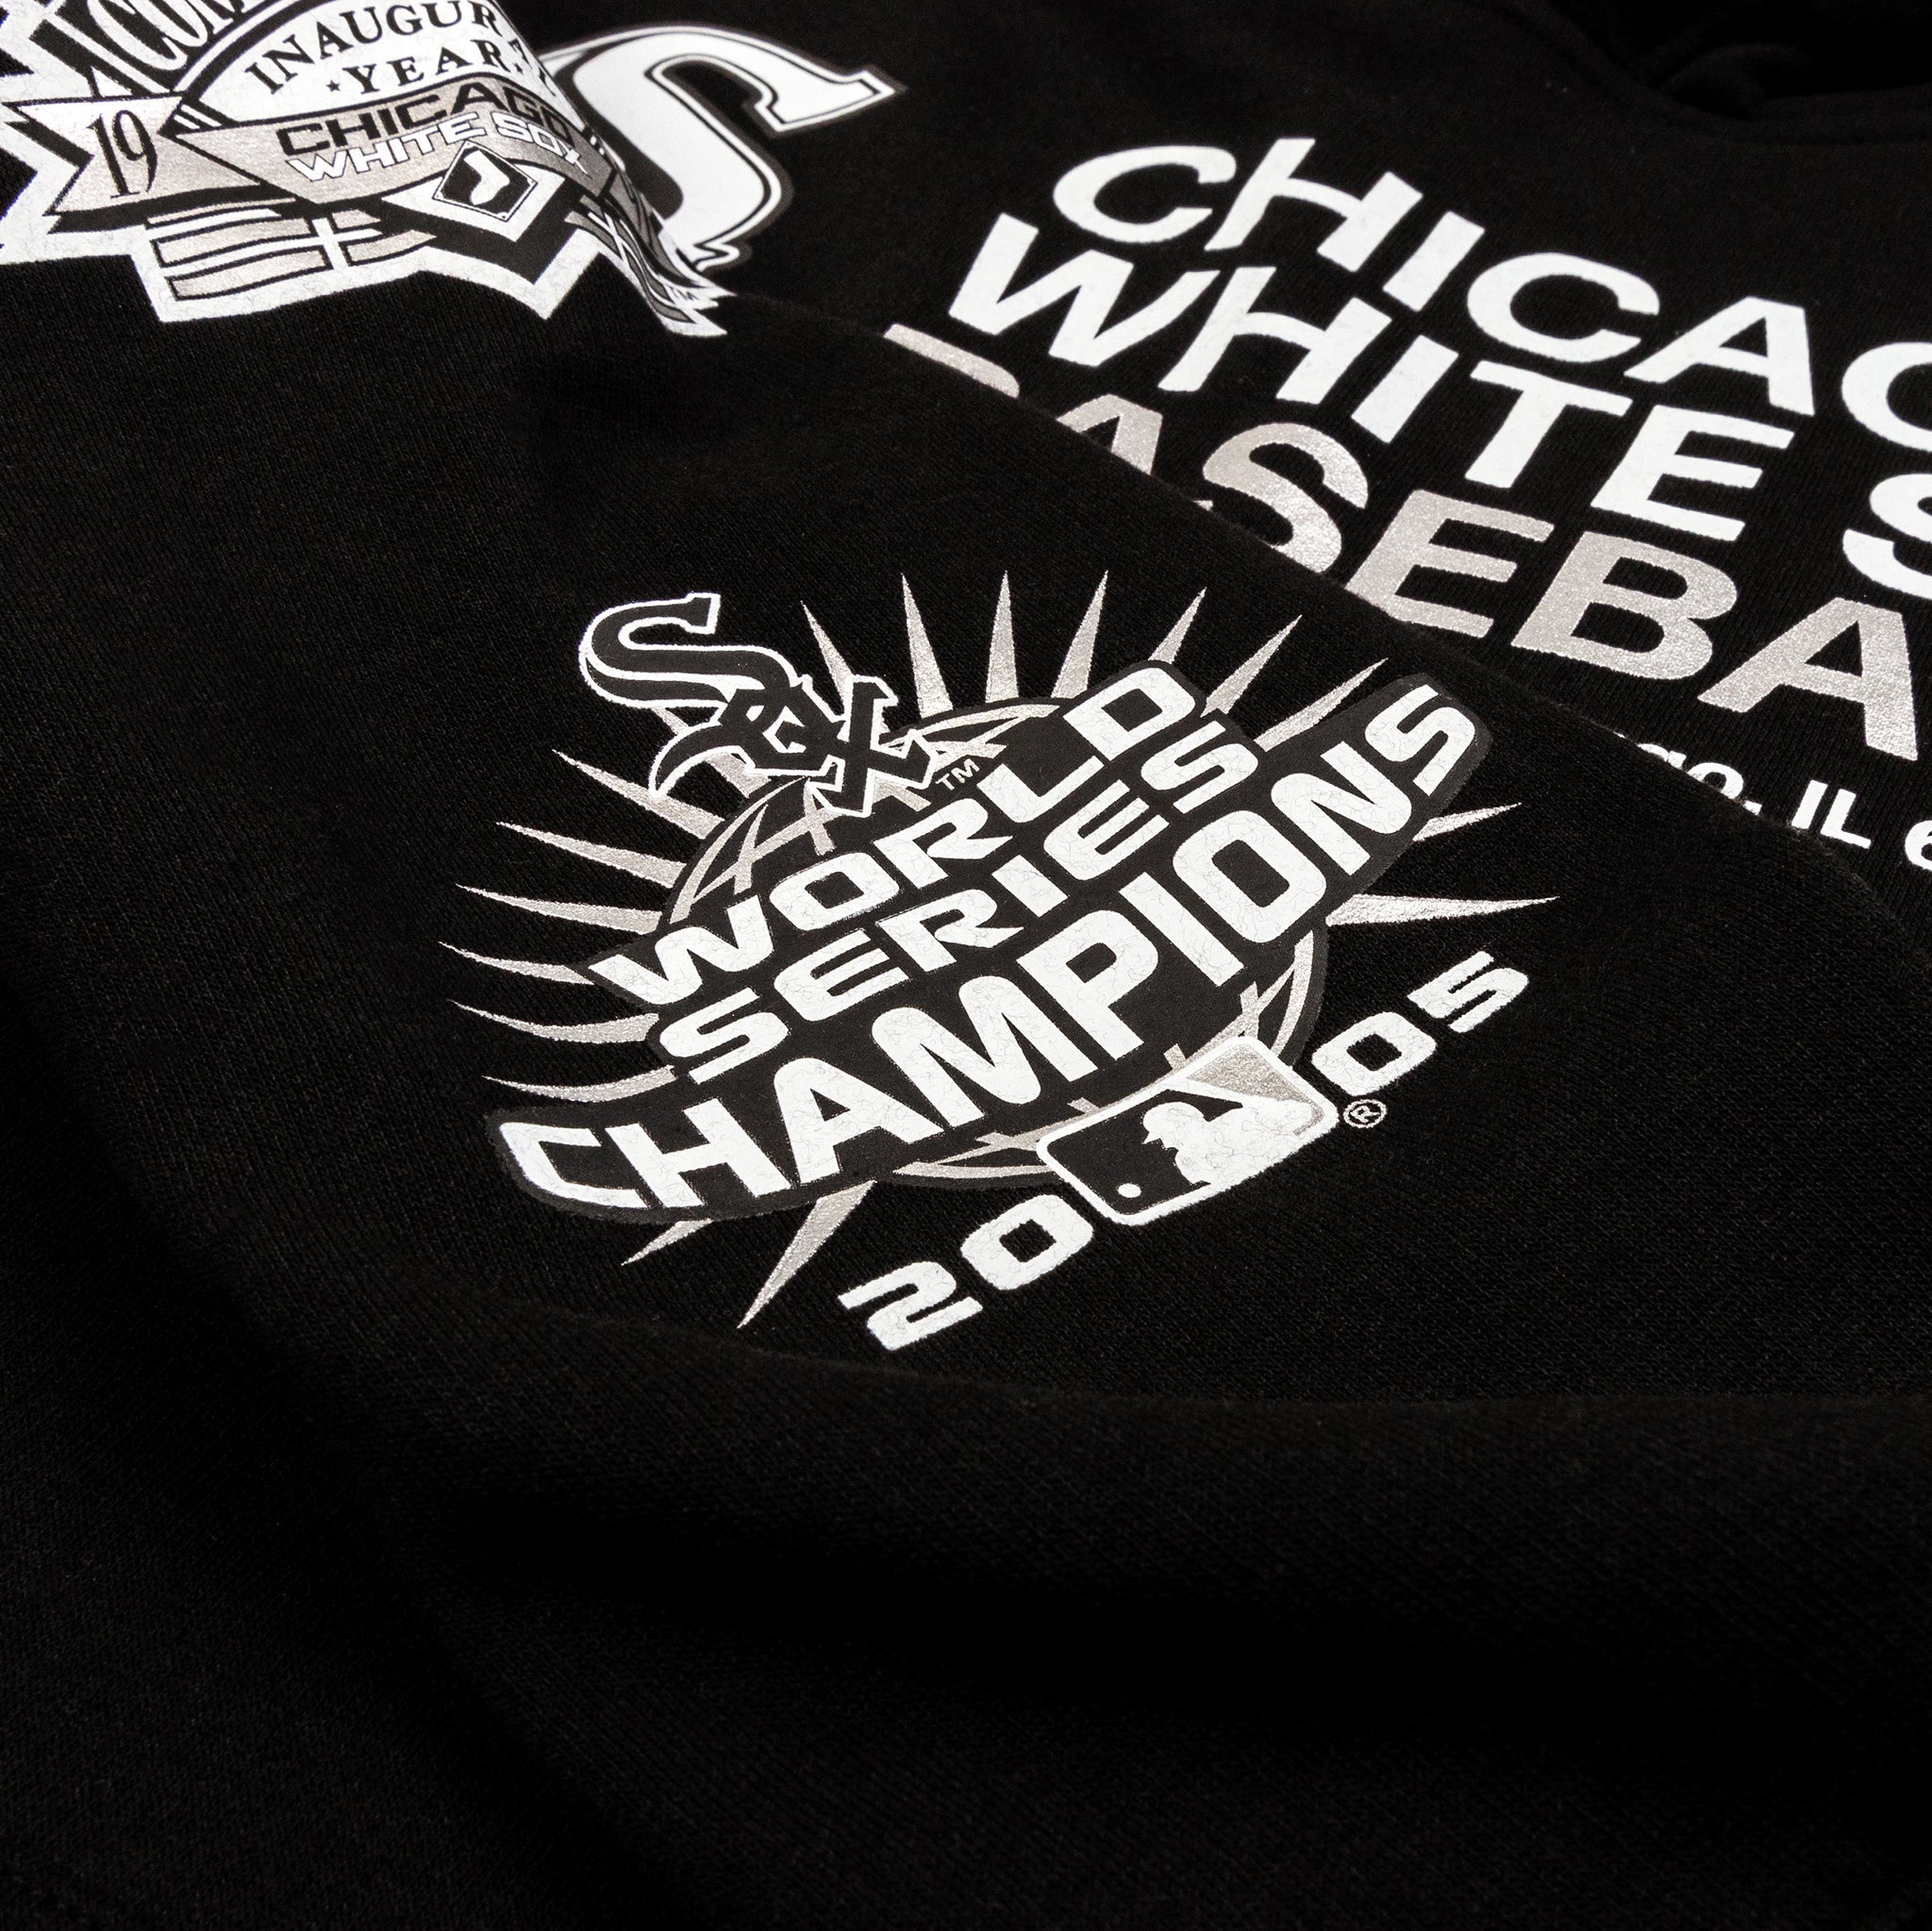 Fanatics White Sox logo t-shirt - T-shirts - /en